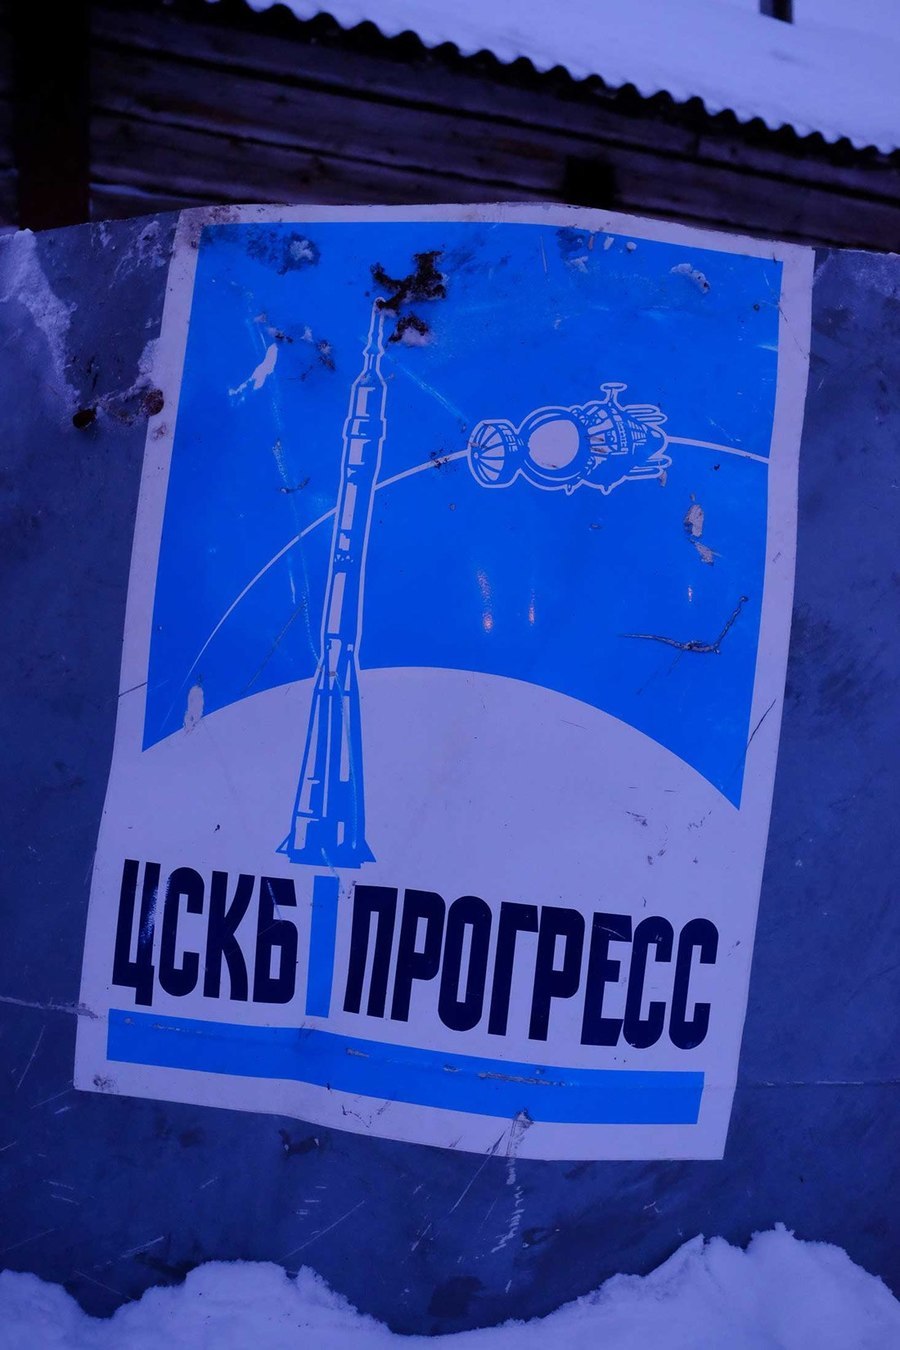  تترجم هذه الكلمة المكتوبة على هذا الصاروخ خارج منزلٍ في Dolgoshchelye إلى كلمة "تطور" أو "تقدم"، وهو اسم سفينة فضائية لنقل البضائع إلى محطة الفضاء الدولية، وكذلك إلى محطتي (ساليوت) و(مير).